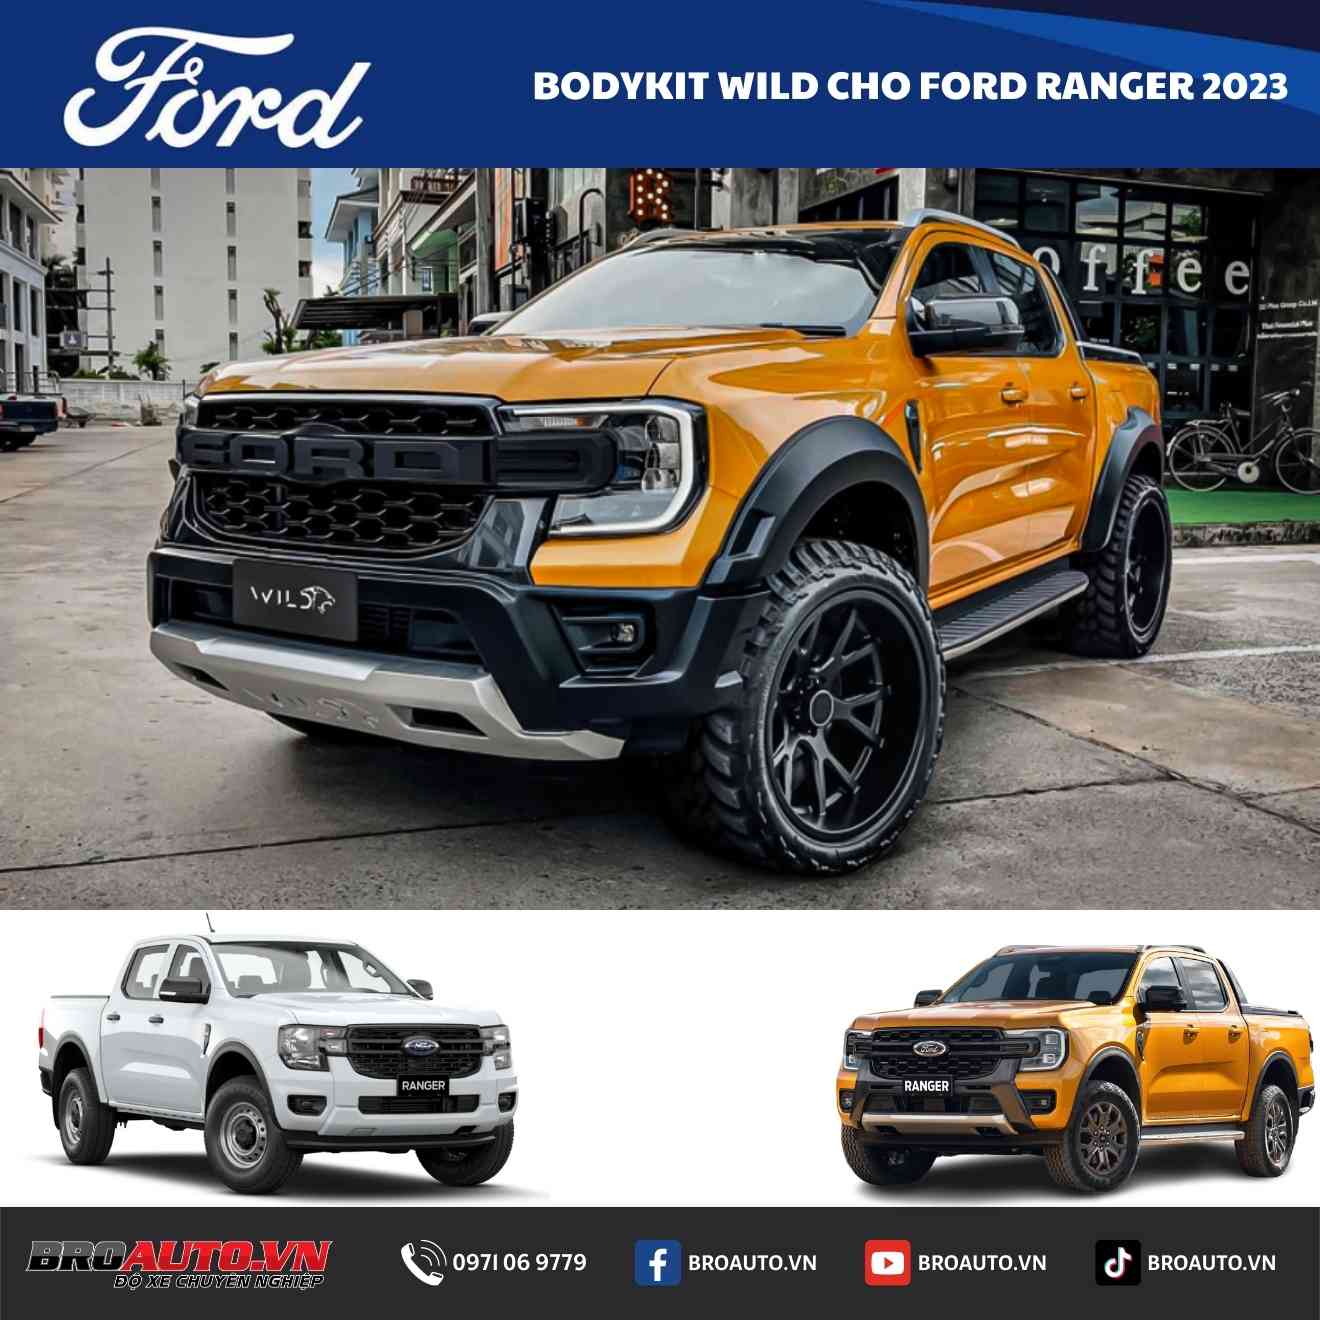 Bodykit Wild Ford Ranger 2023